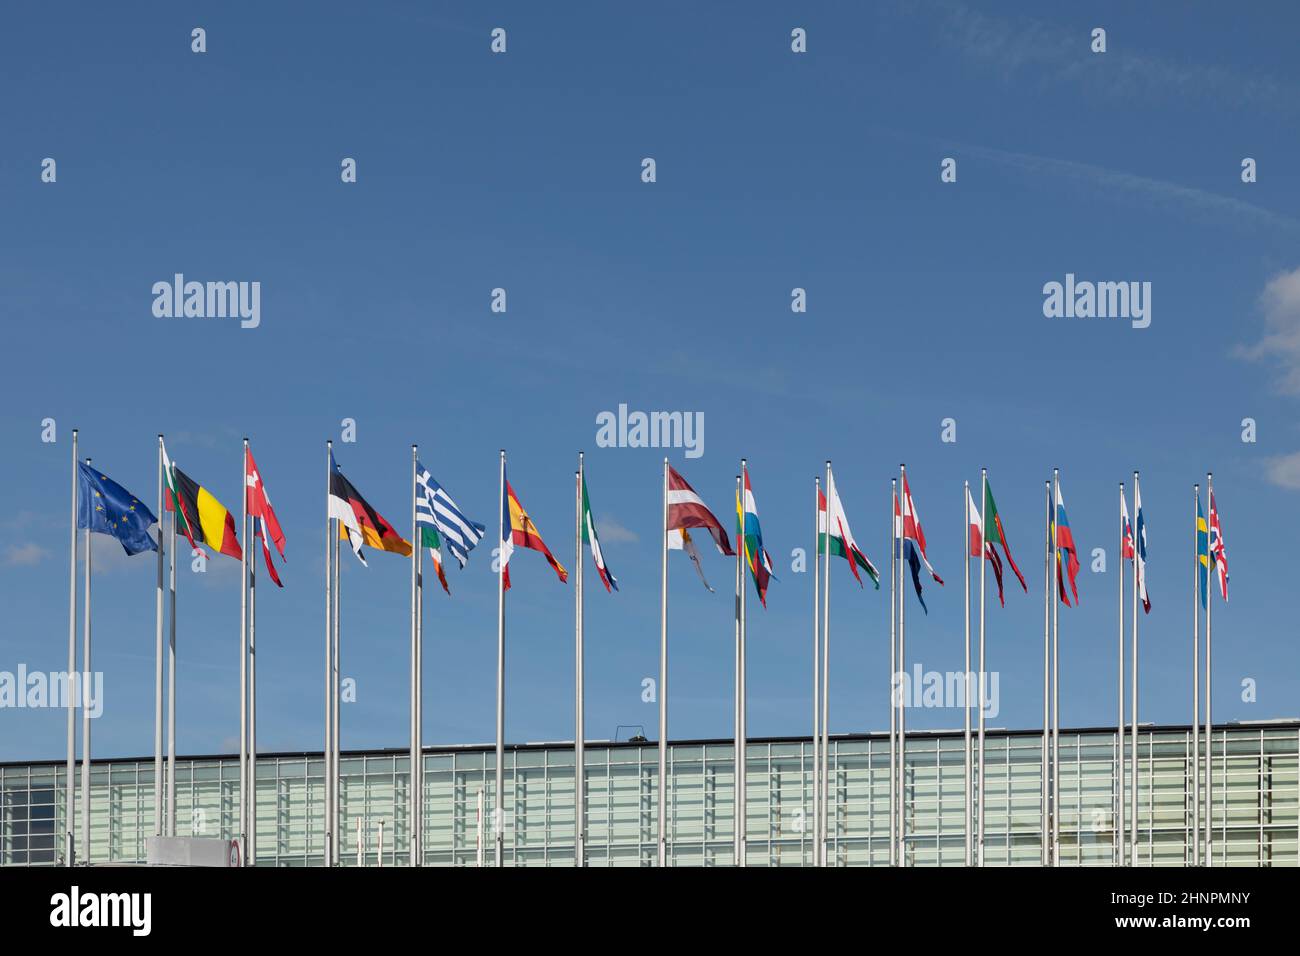 Tous les drapeaux de l'UE le drapeau de l'Union européenne se présente devant le Parlement européen, siège de la Commission européenne Parlement européen Banque D'Images